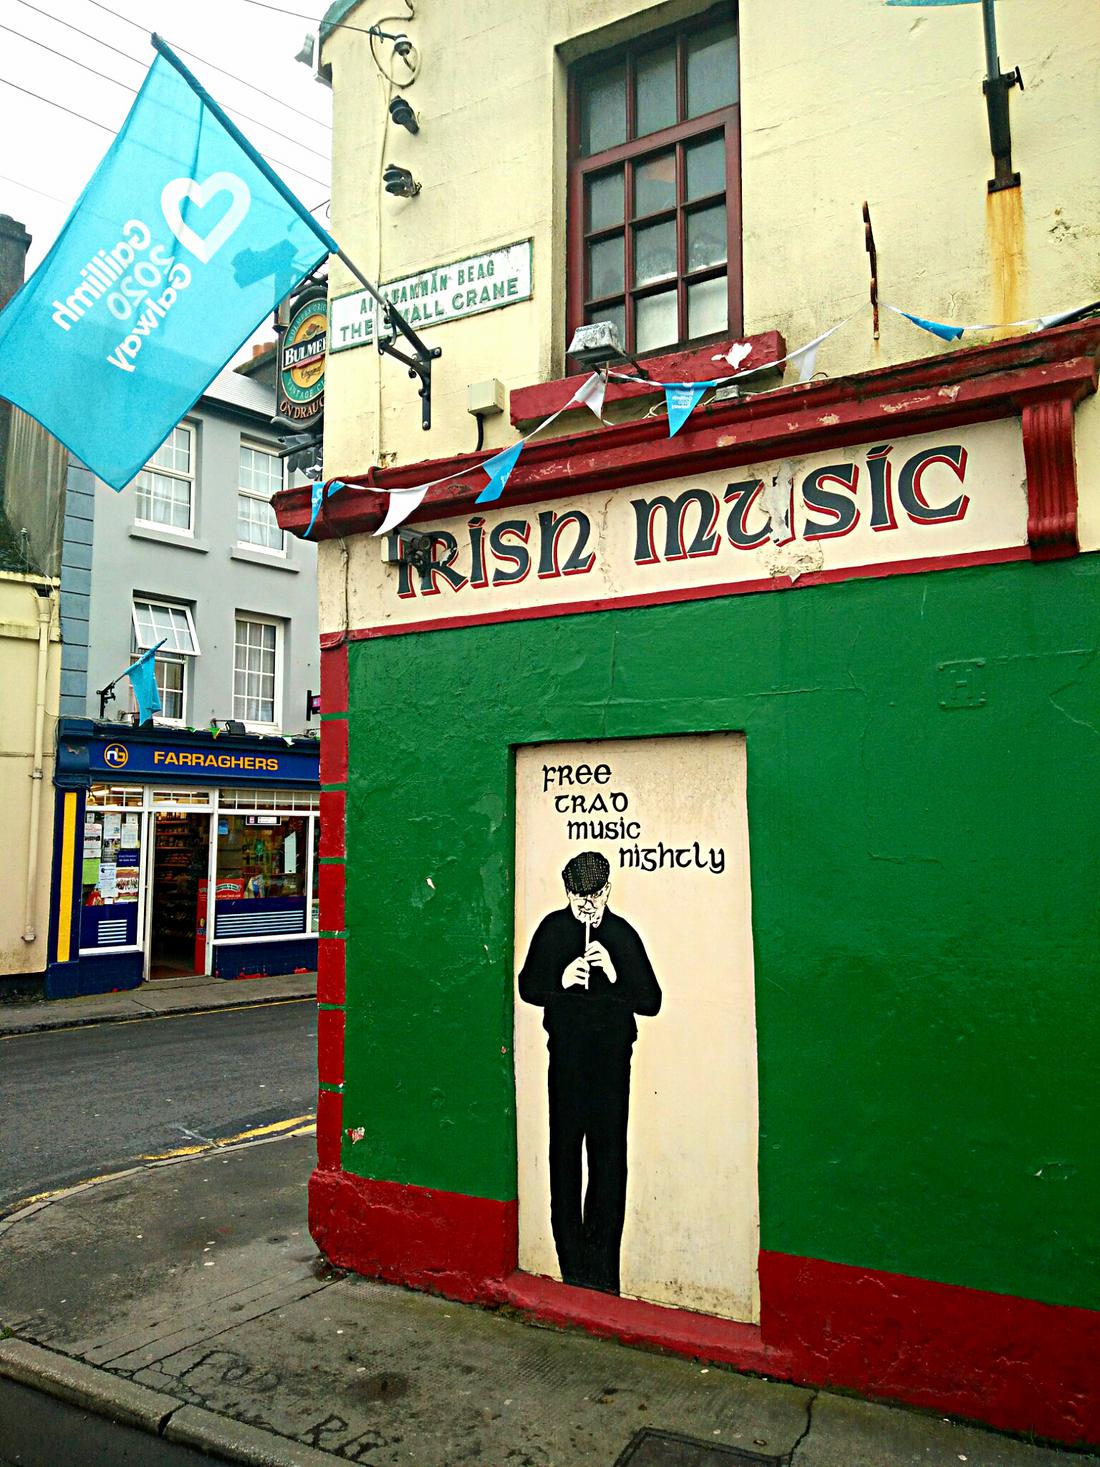 Irish music street art in the city